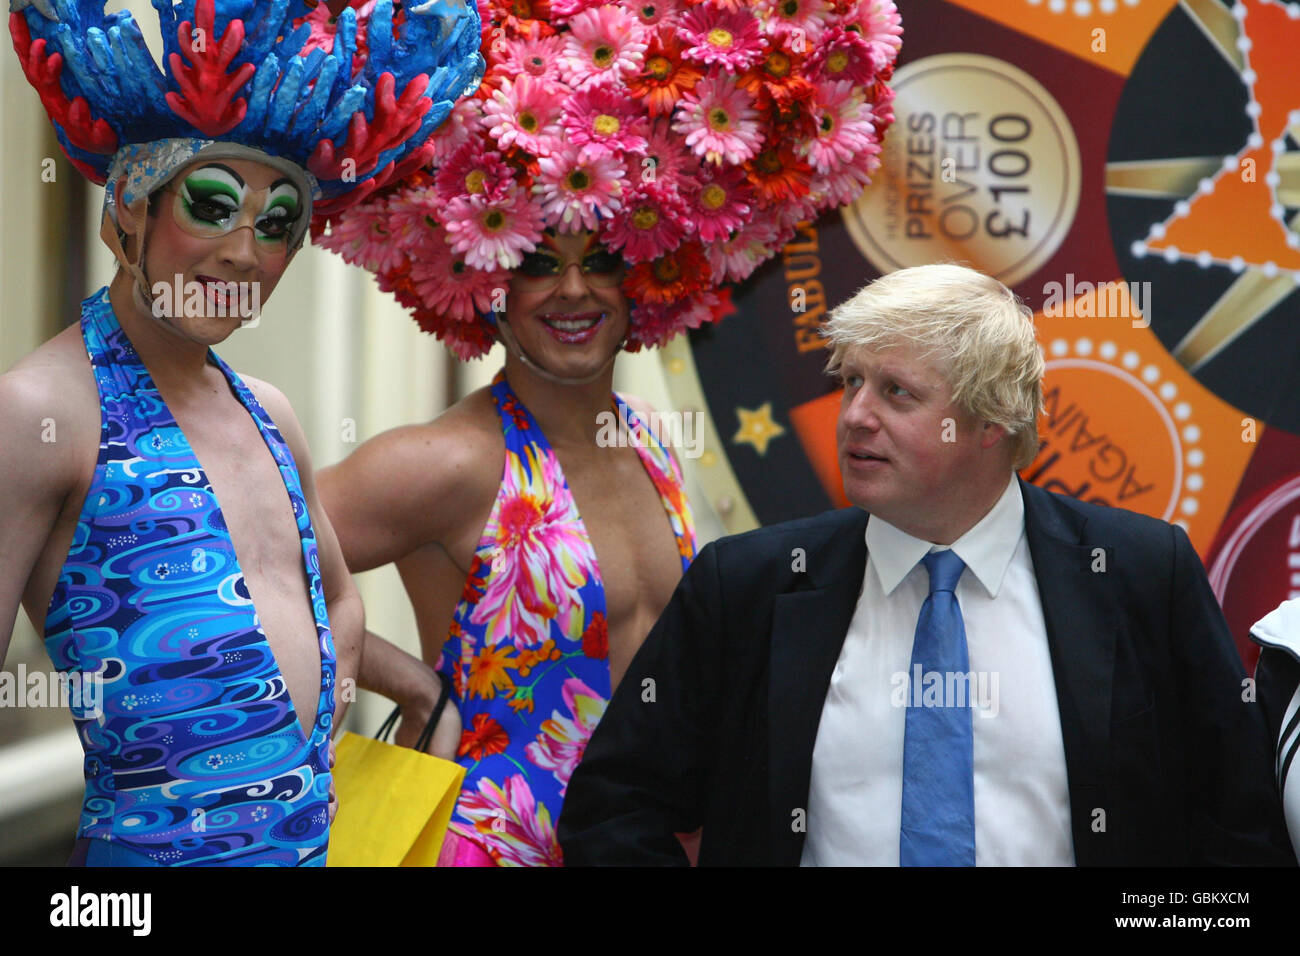 Il Sindaco di Londra Boris Johnson si unisce ai membri del cast del musical West End, Priscilla Queen of the Desert The Musical, per lanciare West End è il momento di Covent Garden, nel centro di Londra. Foto Stock